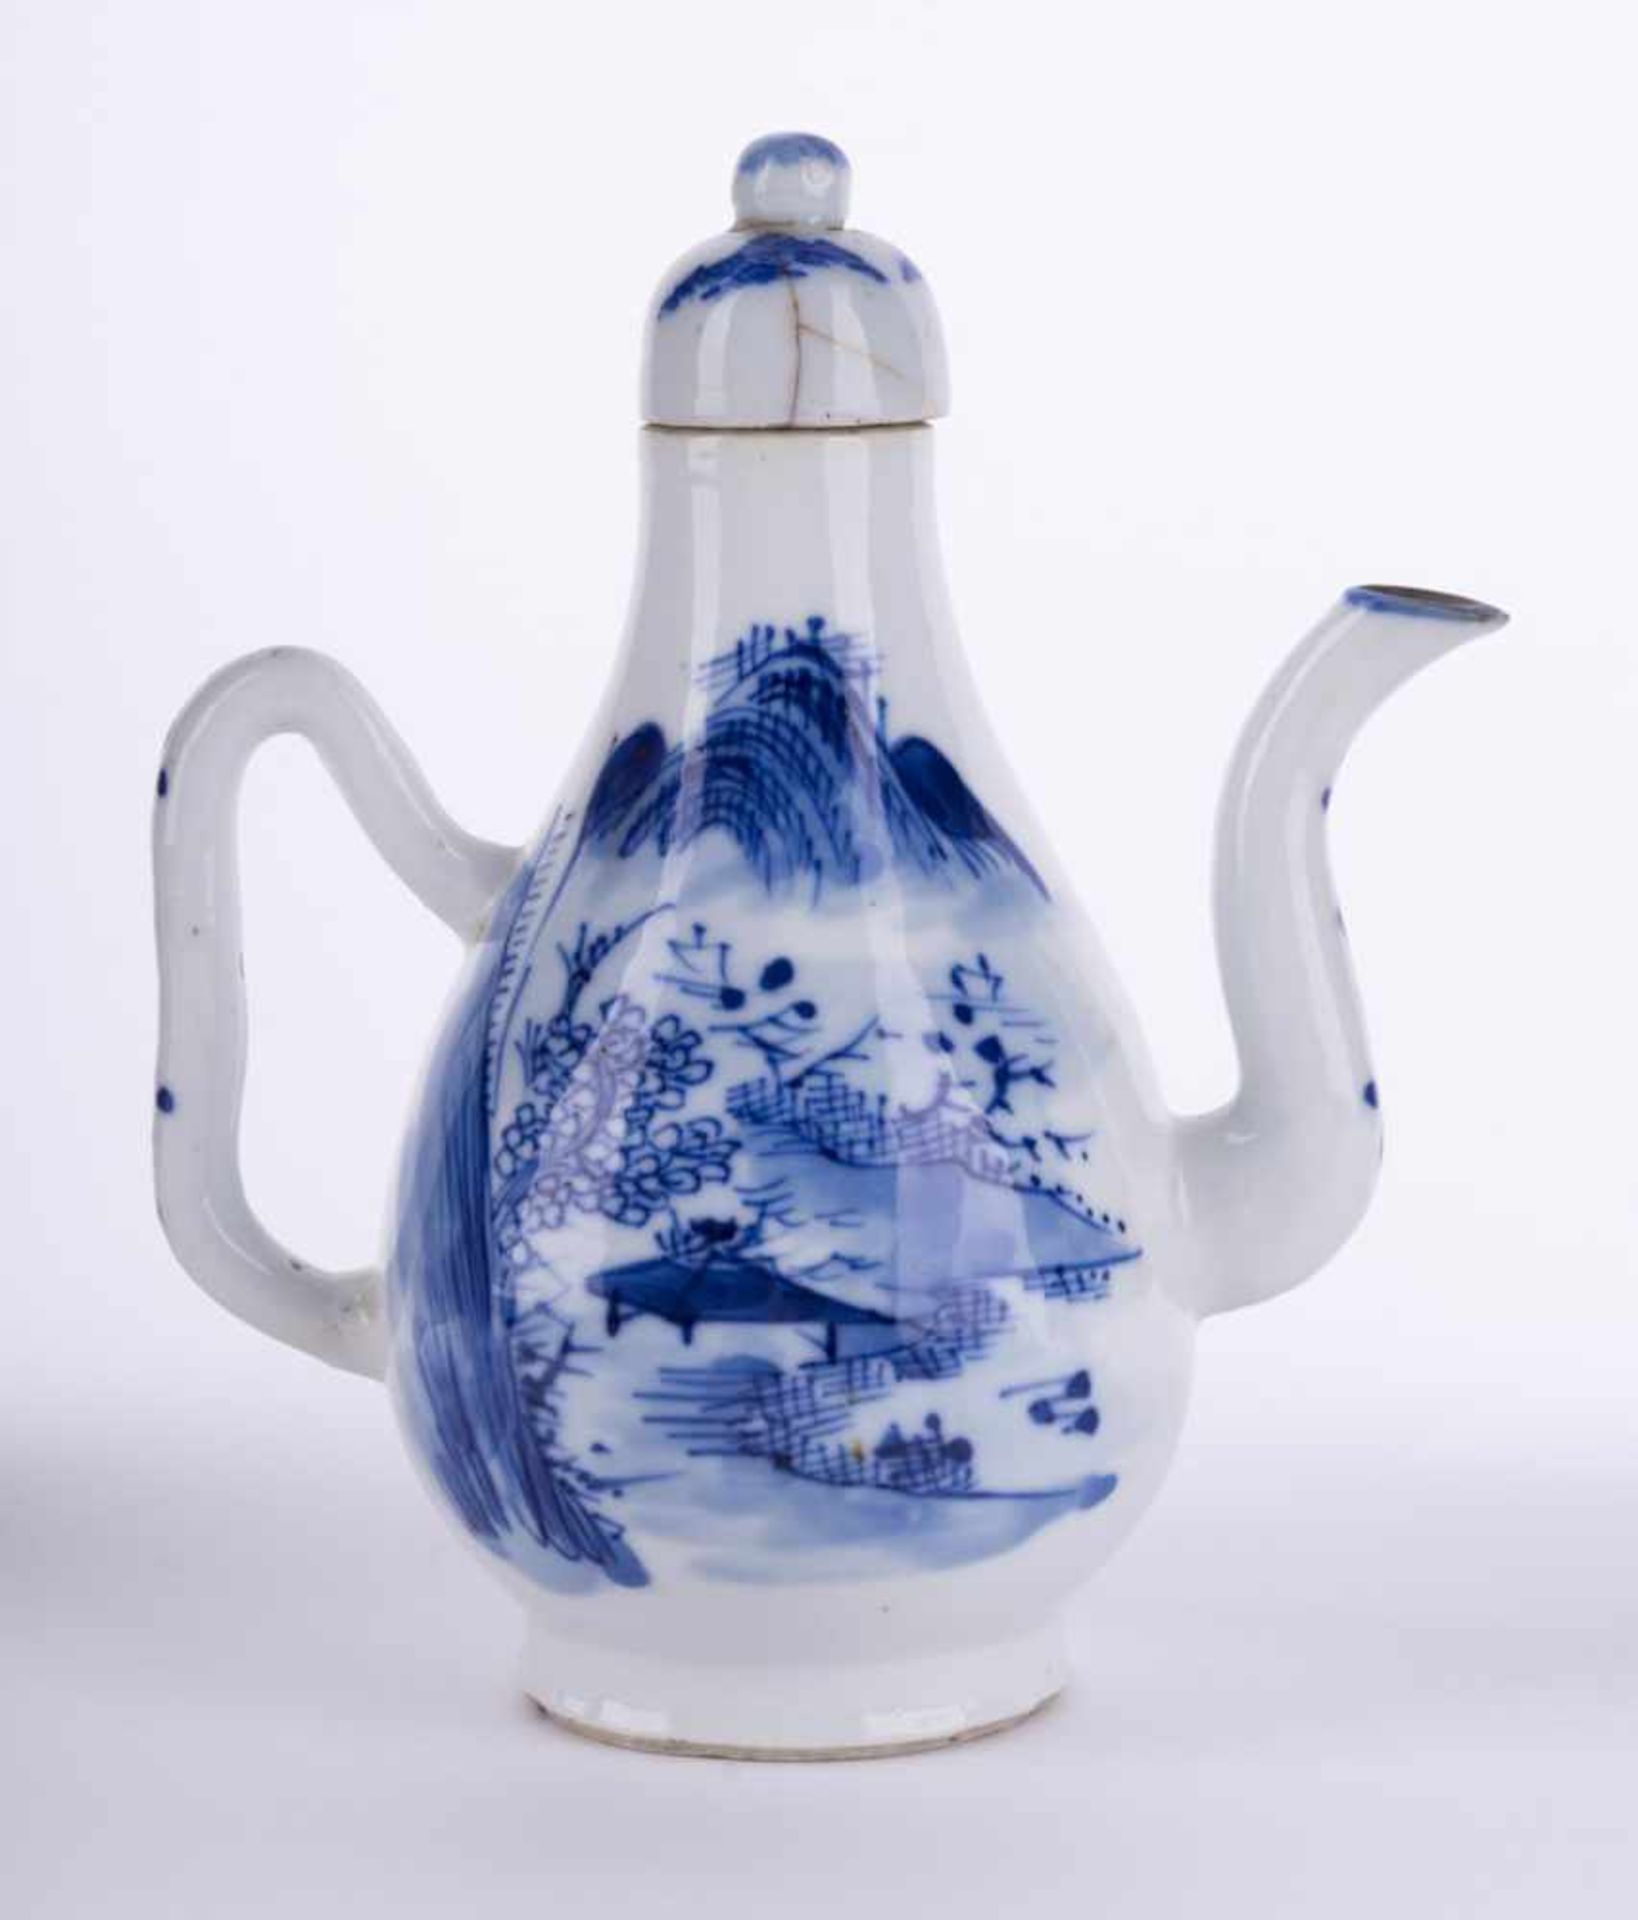 Kanne China 19. Jhd. / Pot, China 19th century blau weiß Malerei, unterm Stand alte Sammlungsnummer, - Image 2 of 5